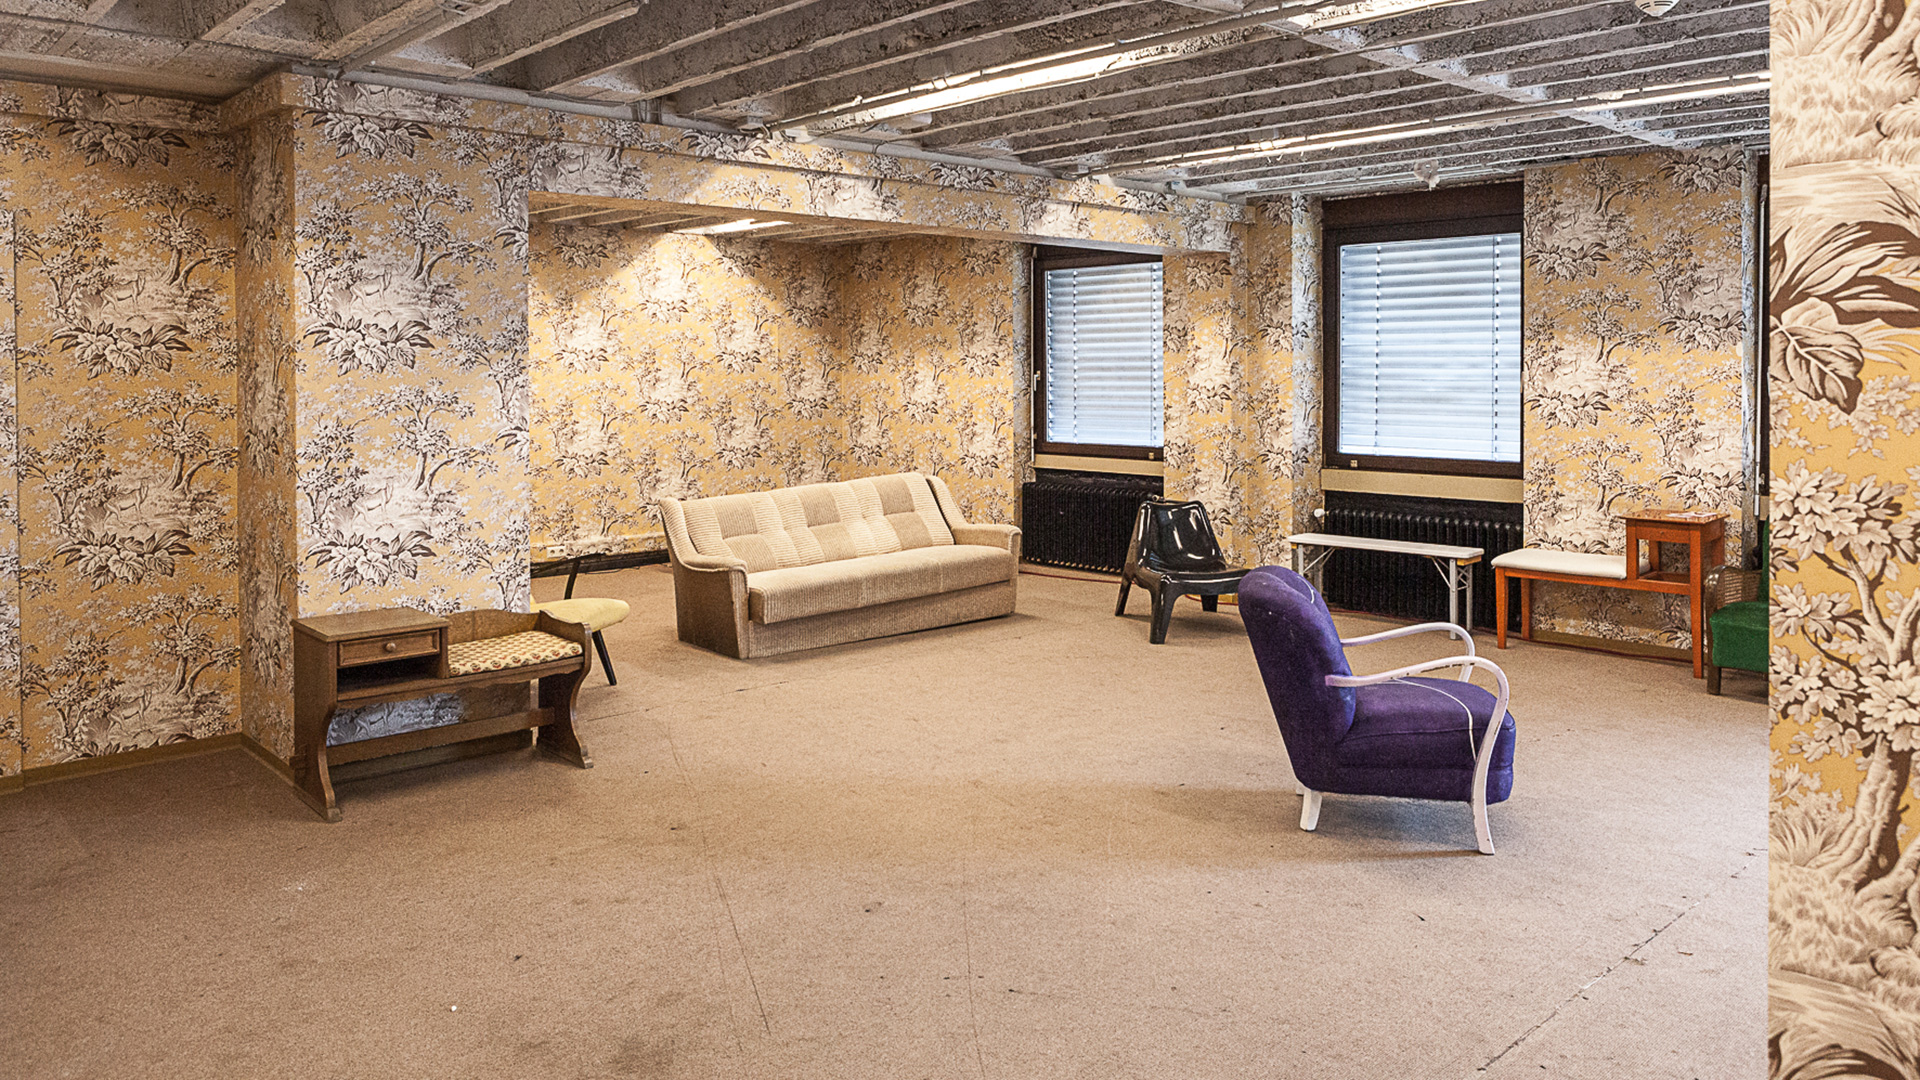 Das Bild zeigt einen großen Raum mit einer auffällig gemusterten Blumentapete und Möbel wie z.B. einem Sessel und einem Sofa.